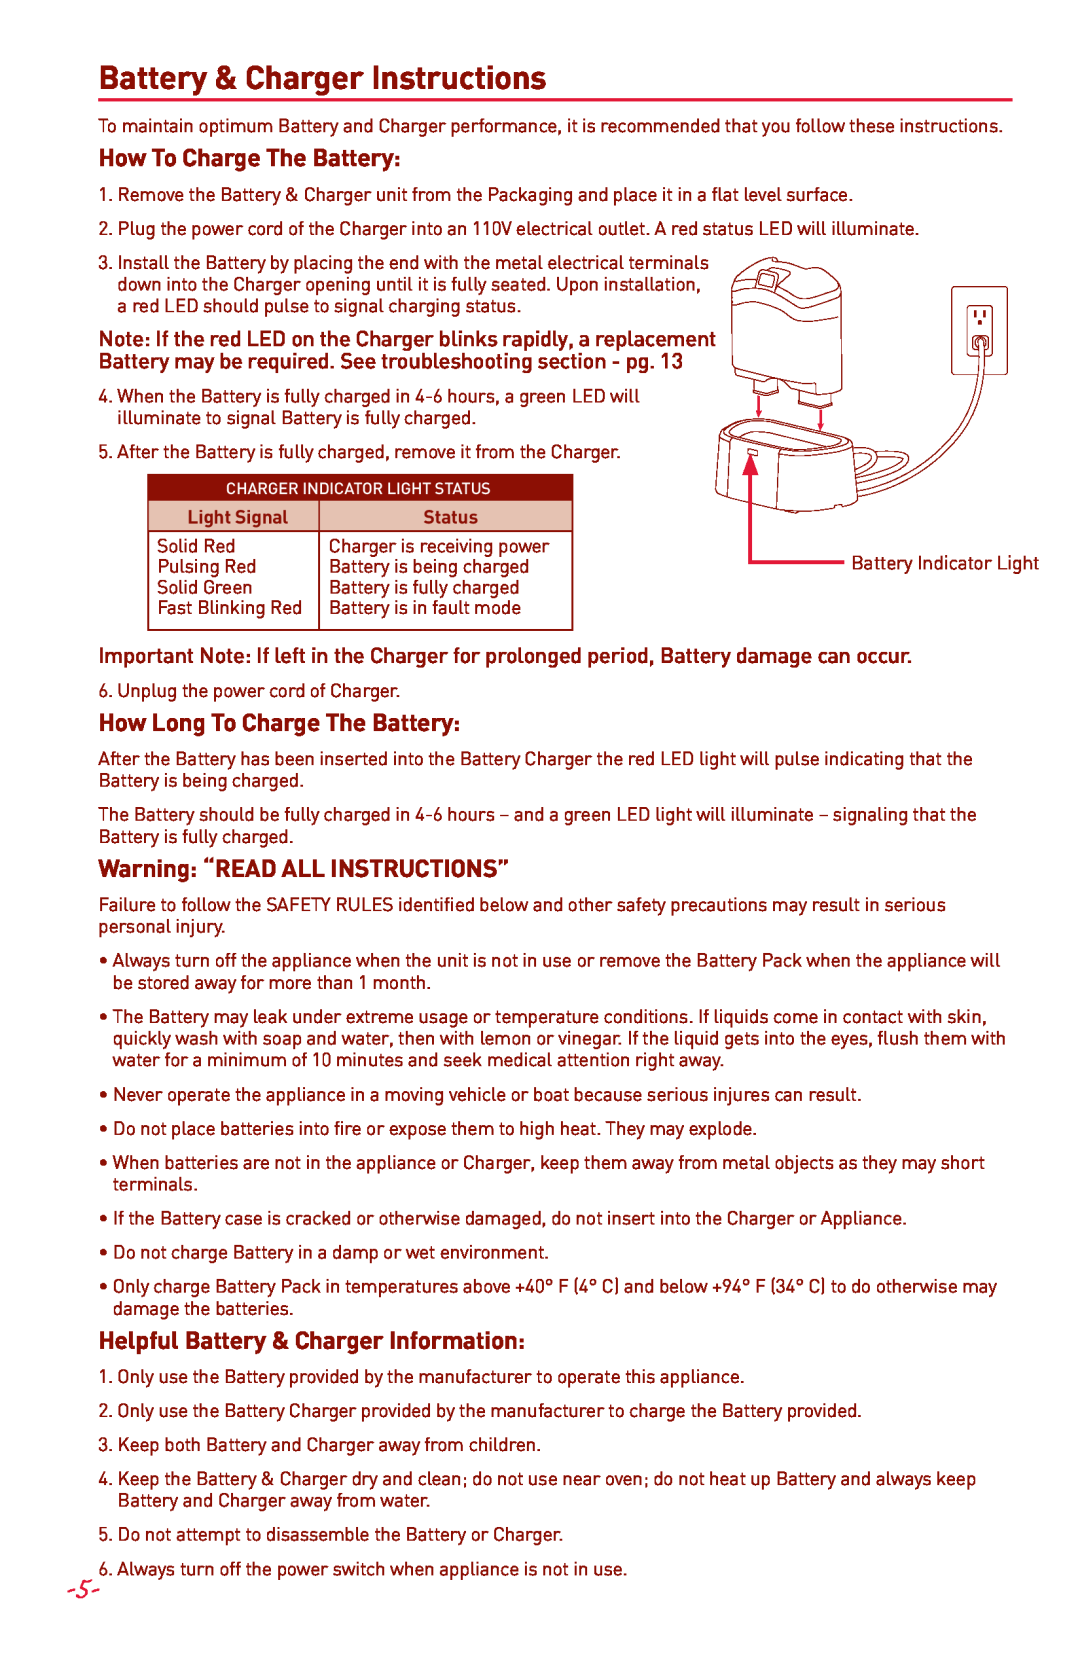 Margaritaville NBMGDM0900 Battery & Charger Instructions, How To Charge The Battery, How Long To Charge The Battery 